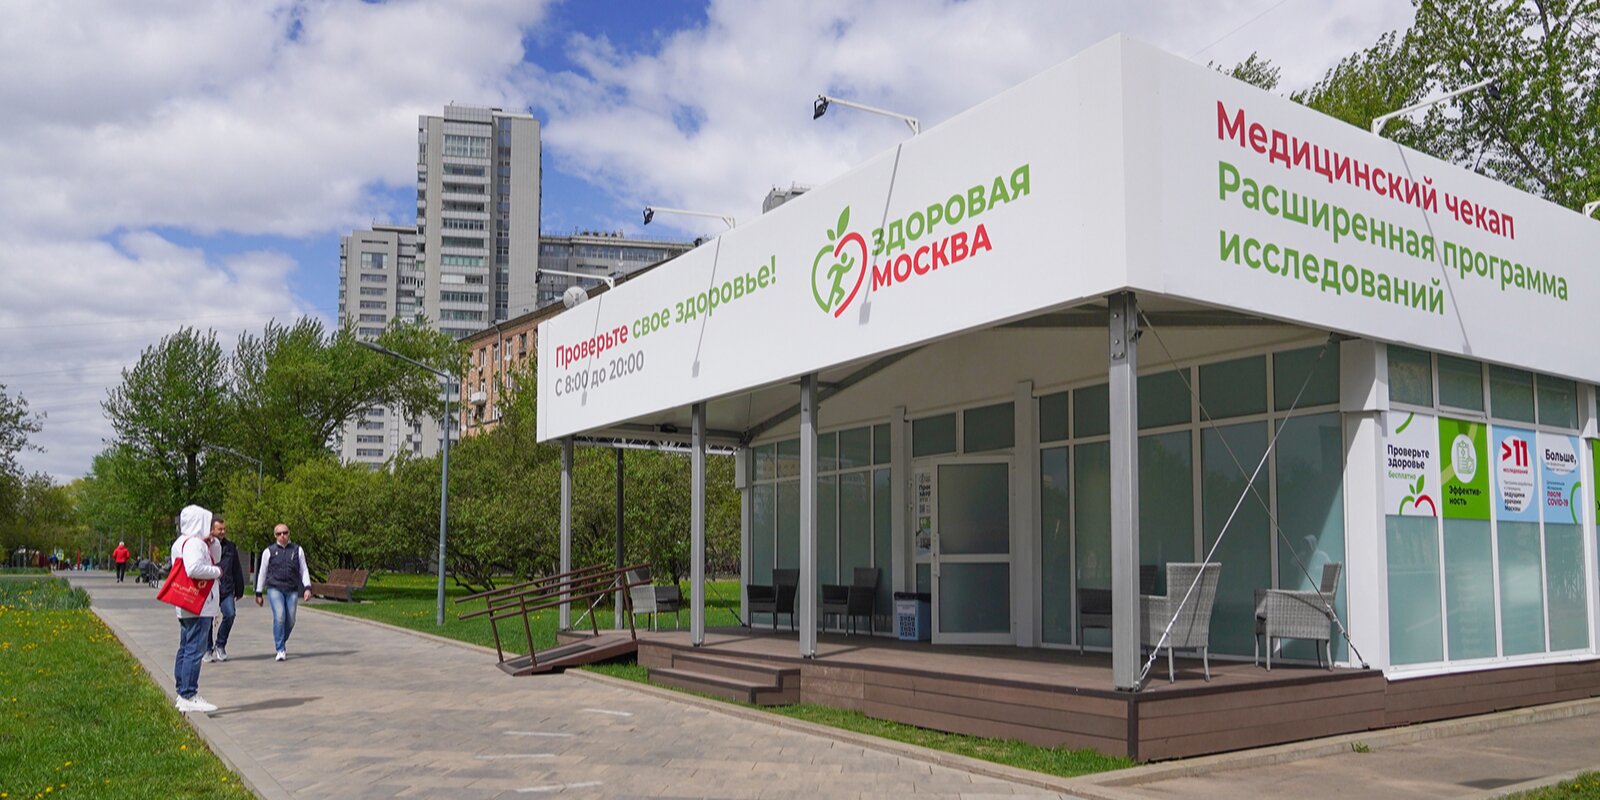 Москвичам расскажут о правильном питании в условиях жизни в мегаполисе. Фото: сайт мэра Москвы